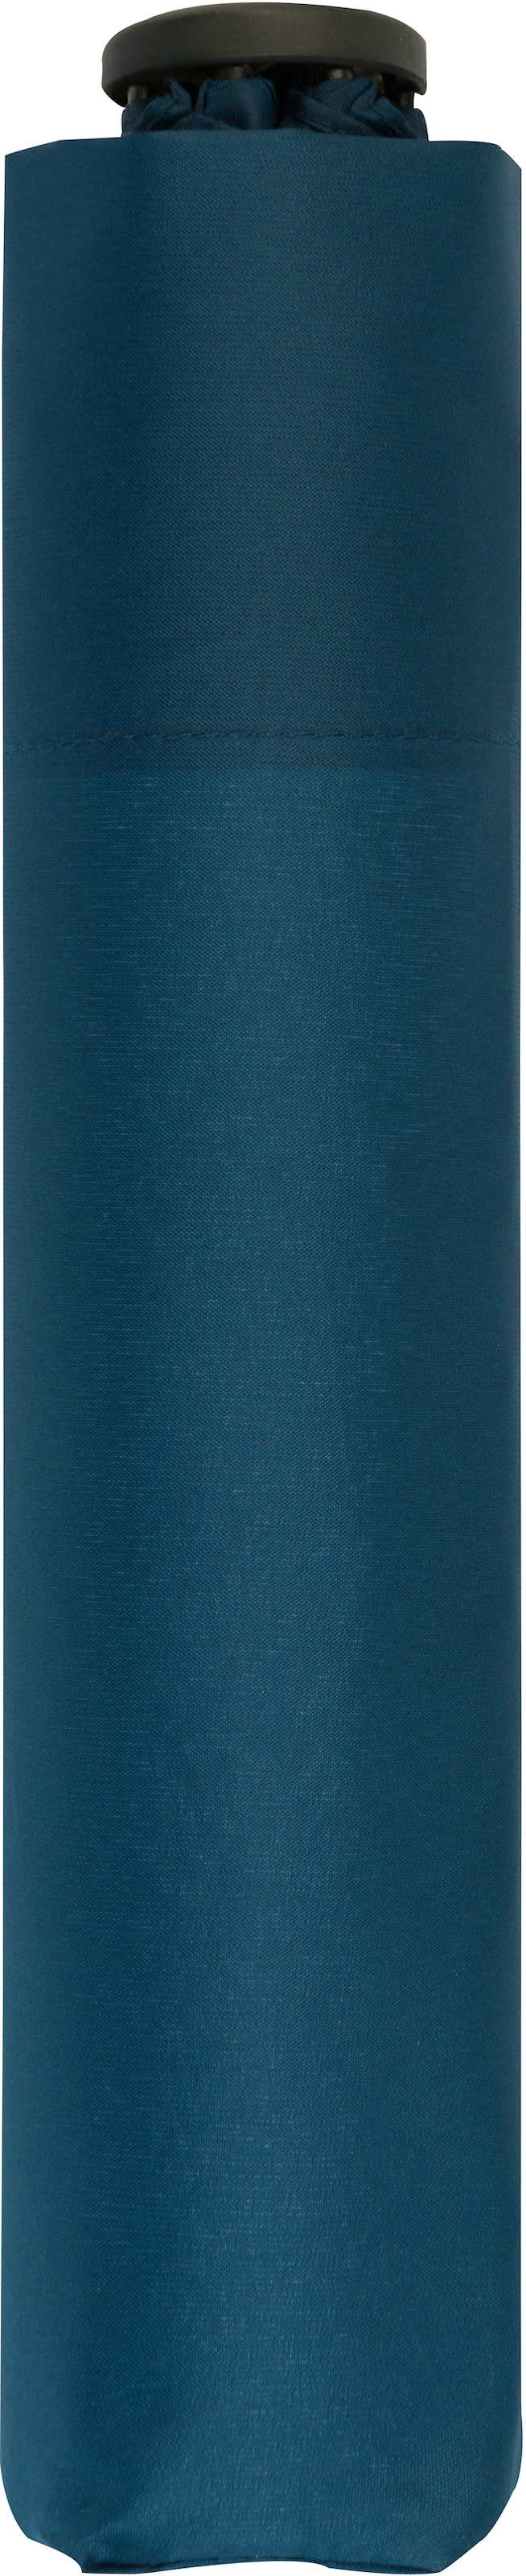 doppler® Taschenregenschirm »Zero 99 uni, Blue« online kaufen Crystal